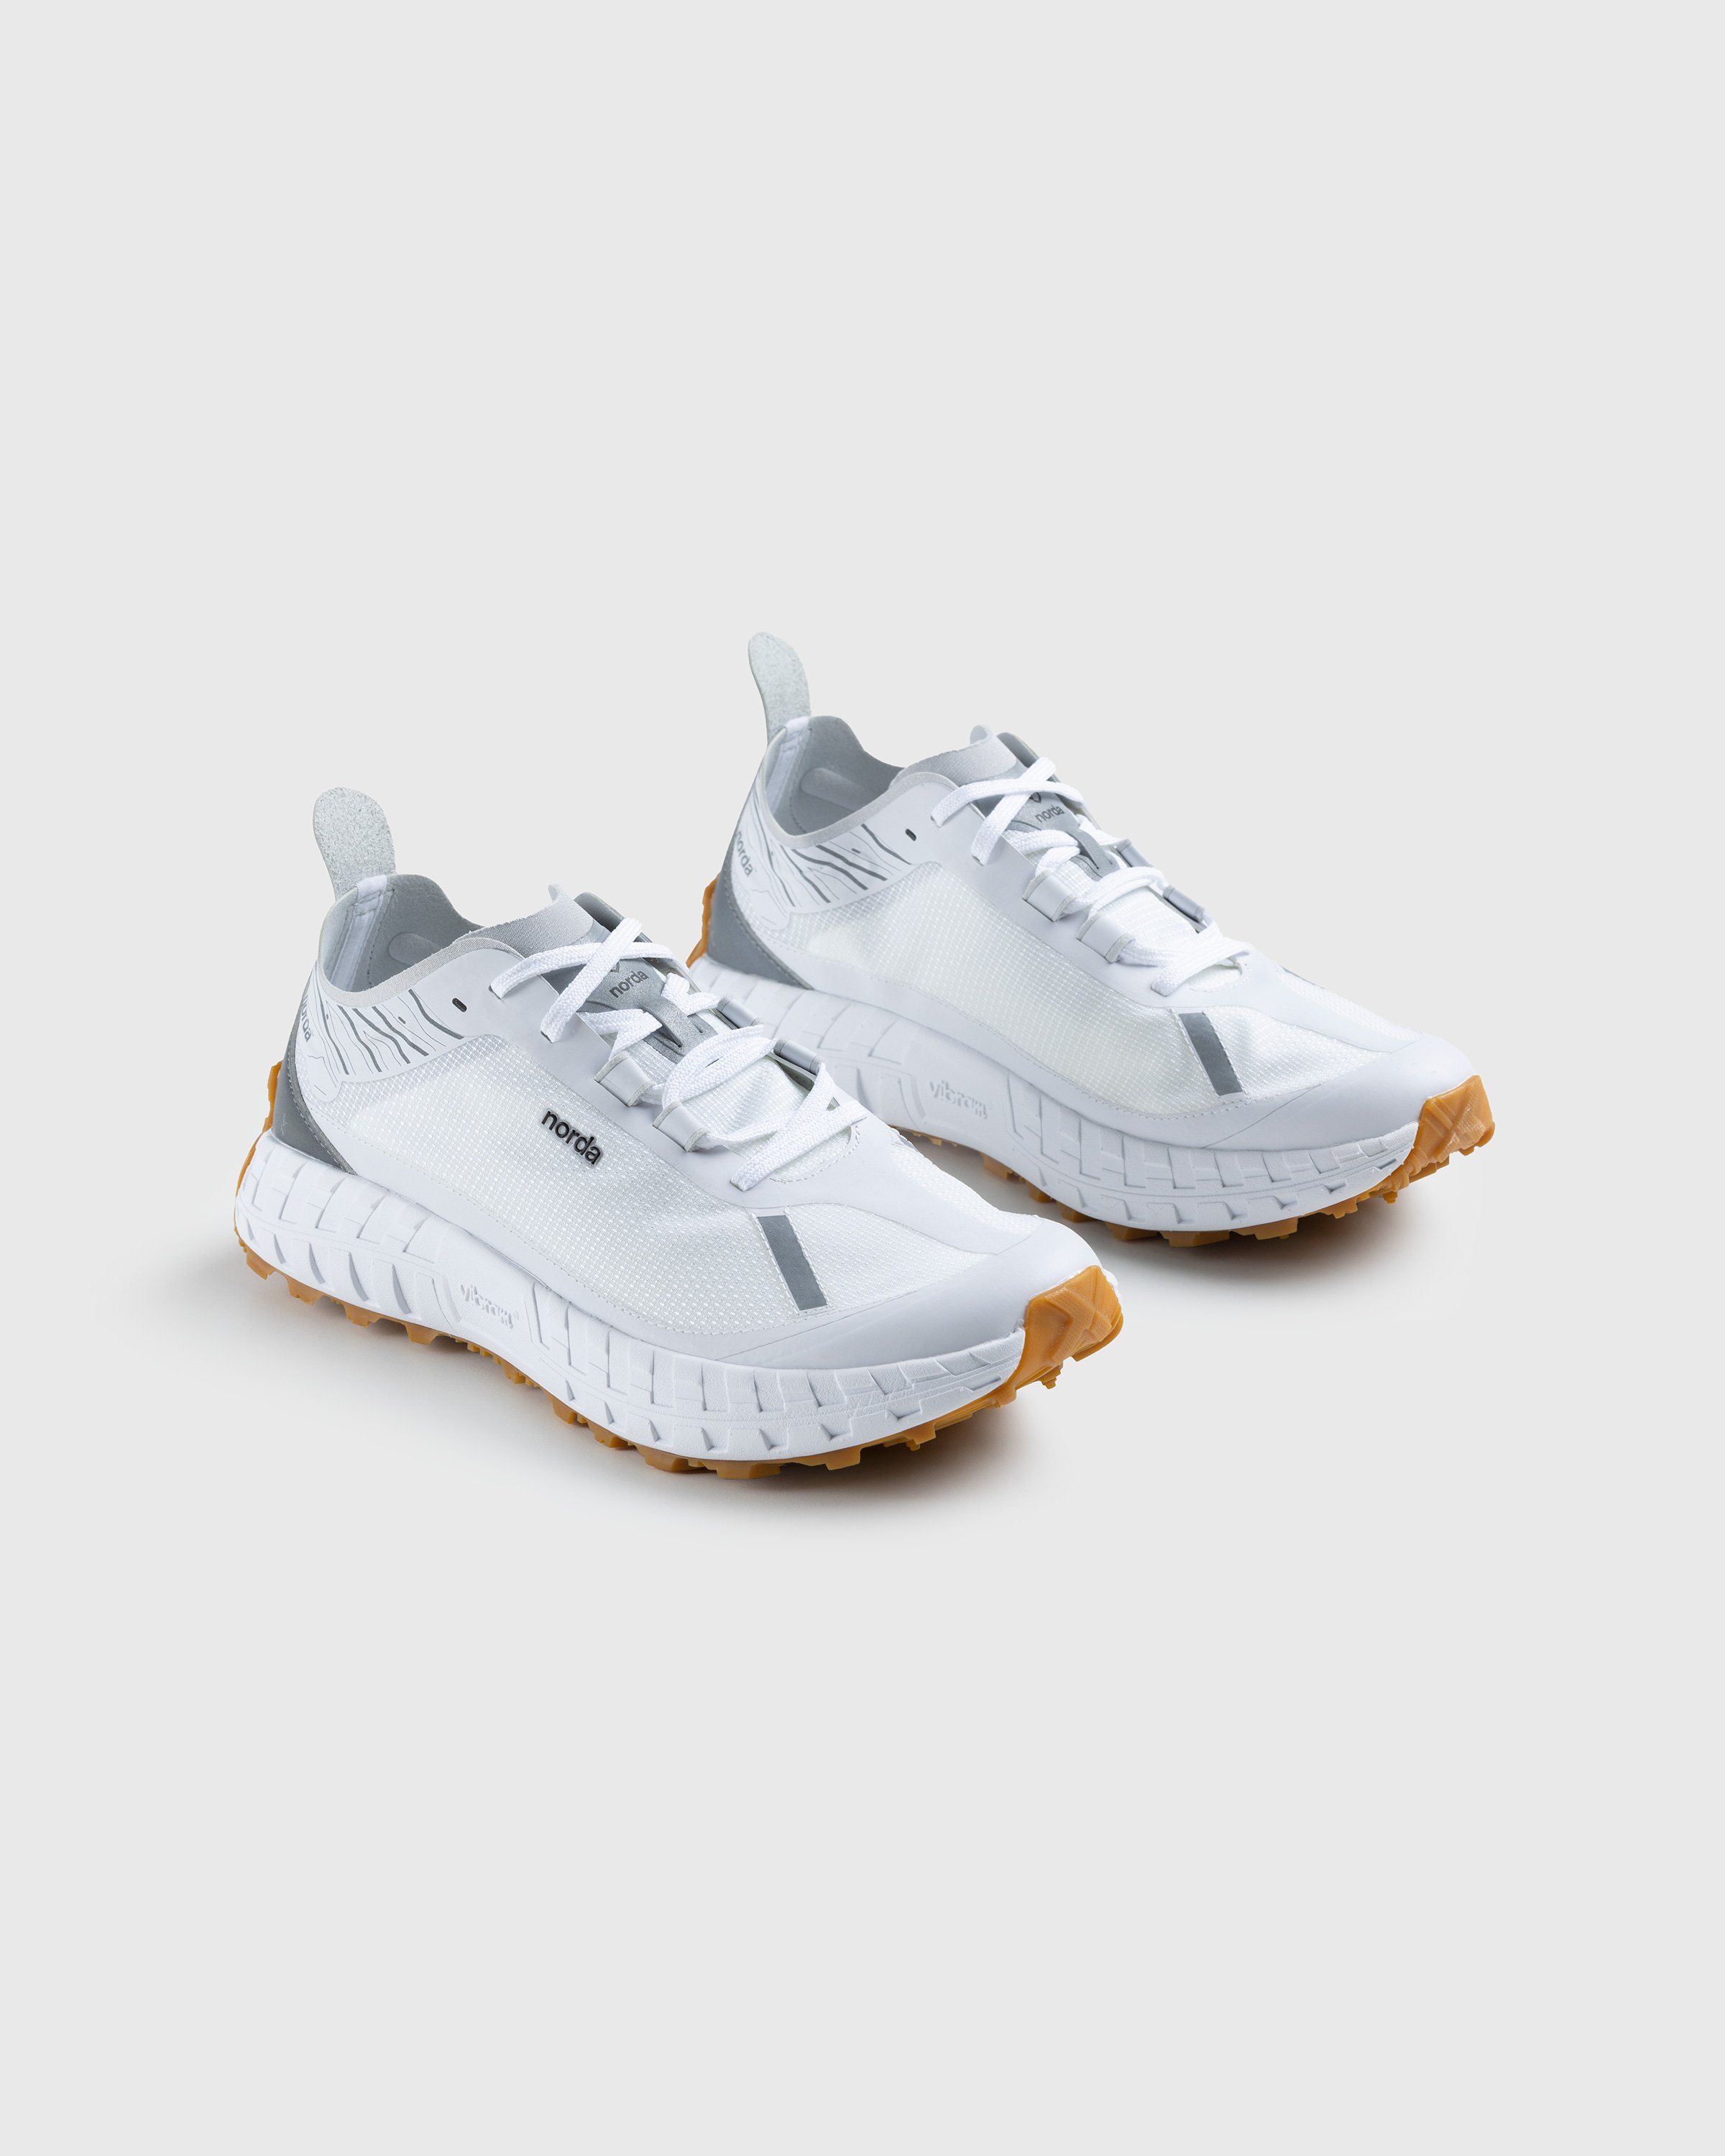 Norda - 001 W White/Gum - Footwear - White - Image 3